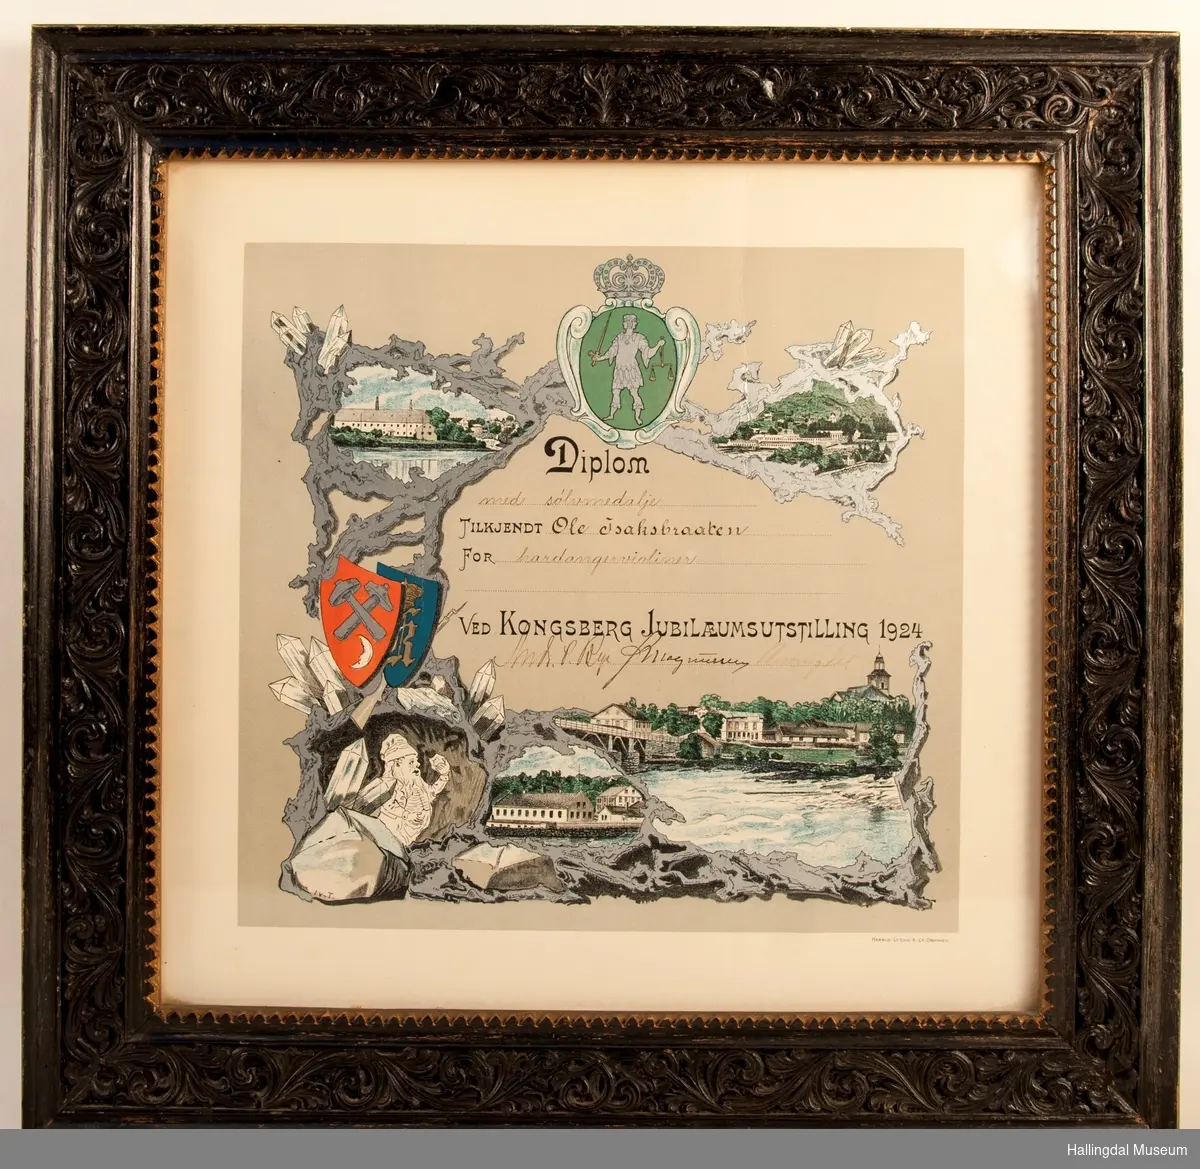 Diplom med sølvmedalje tilkjent Ole Isakbraaten for hardangerviolinen ved Kongsberg Jubileumsutstilling 1924.  Motiv av industrien i Kongsberg.